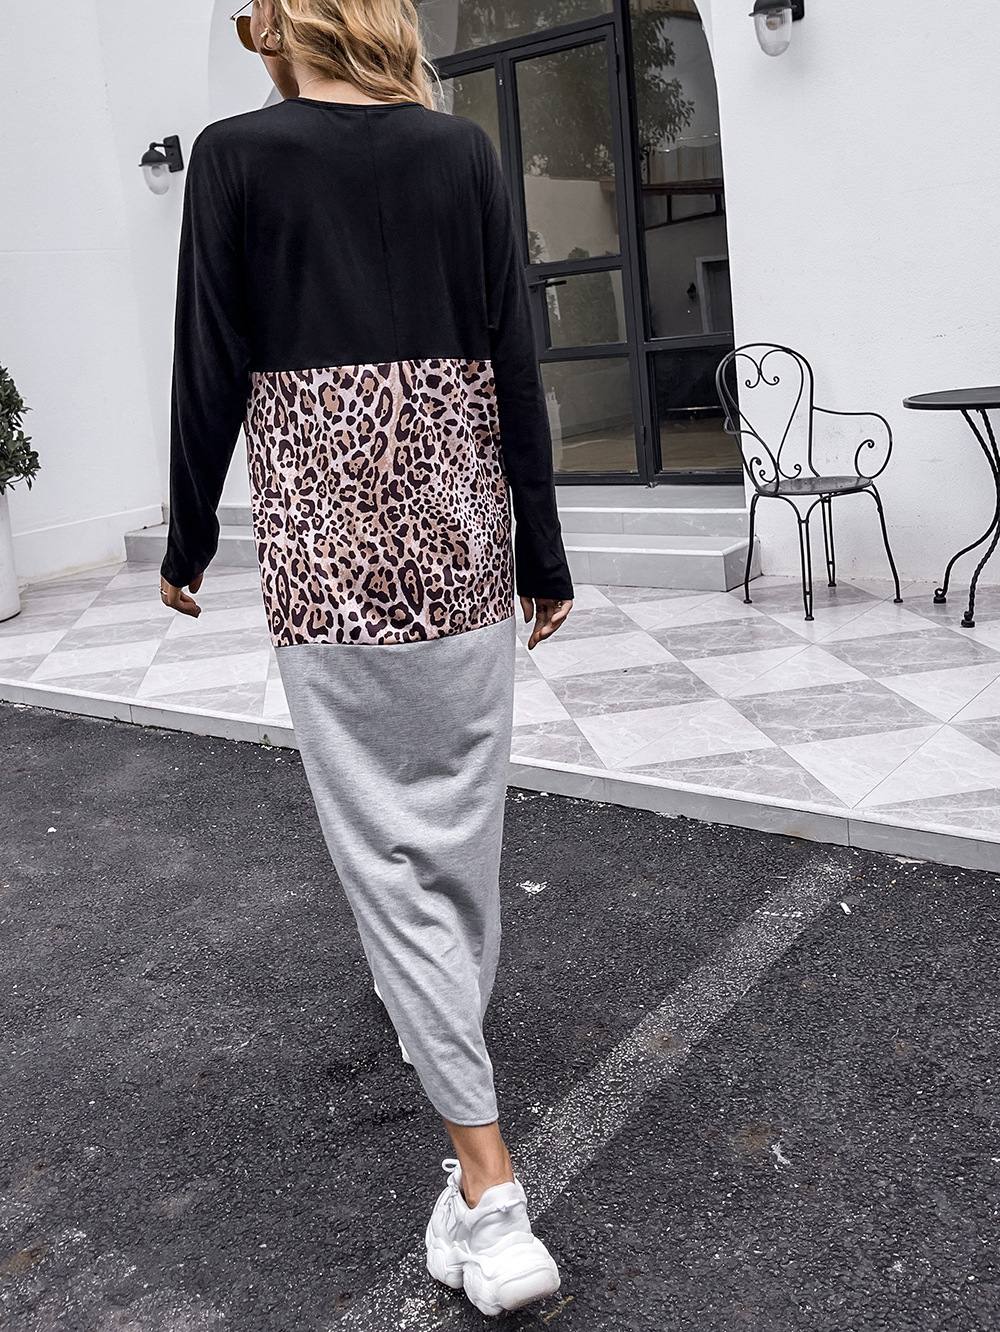 Long European style irregular leopard dress for women